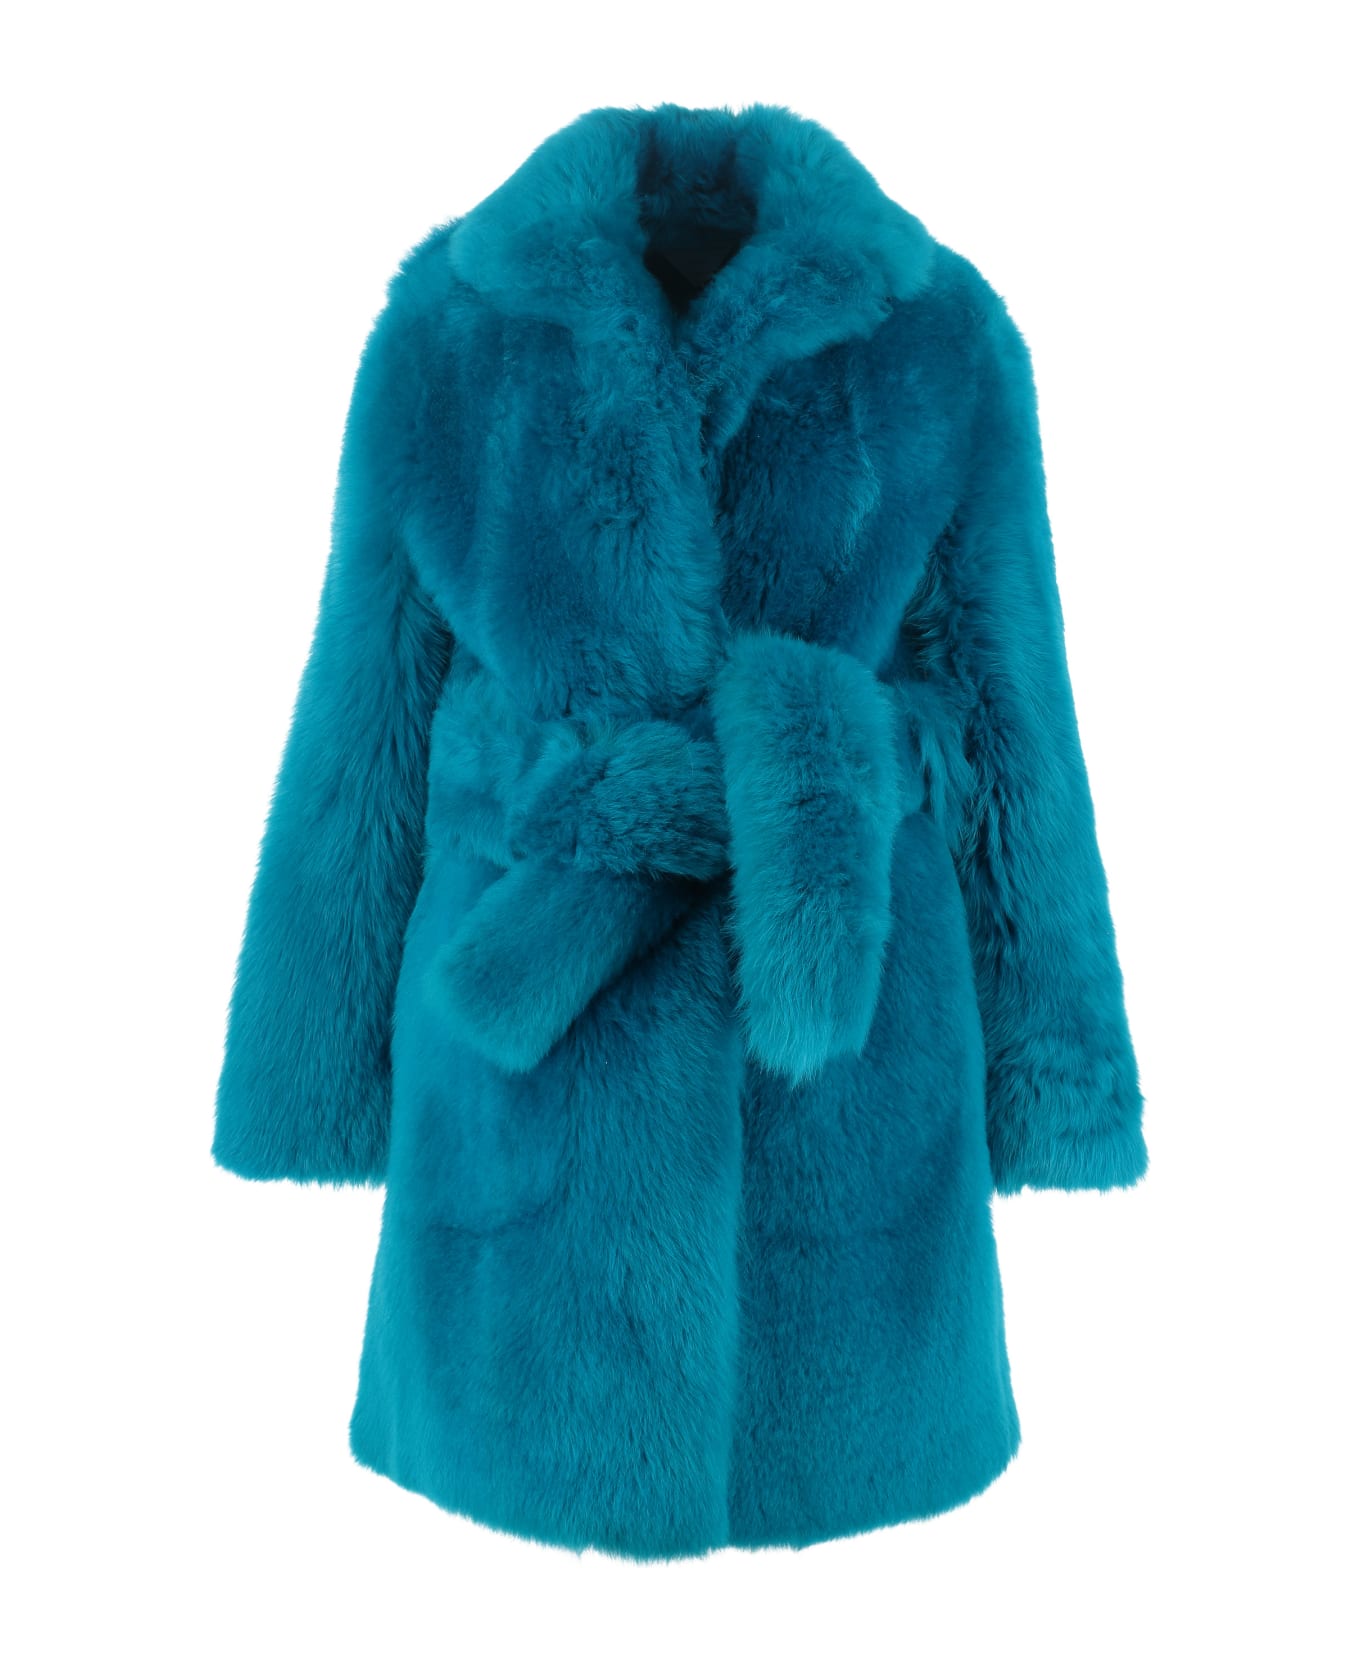 Bottega Veneta Lamb Fur Coat - blue